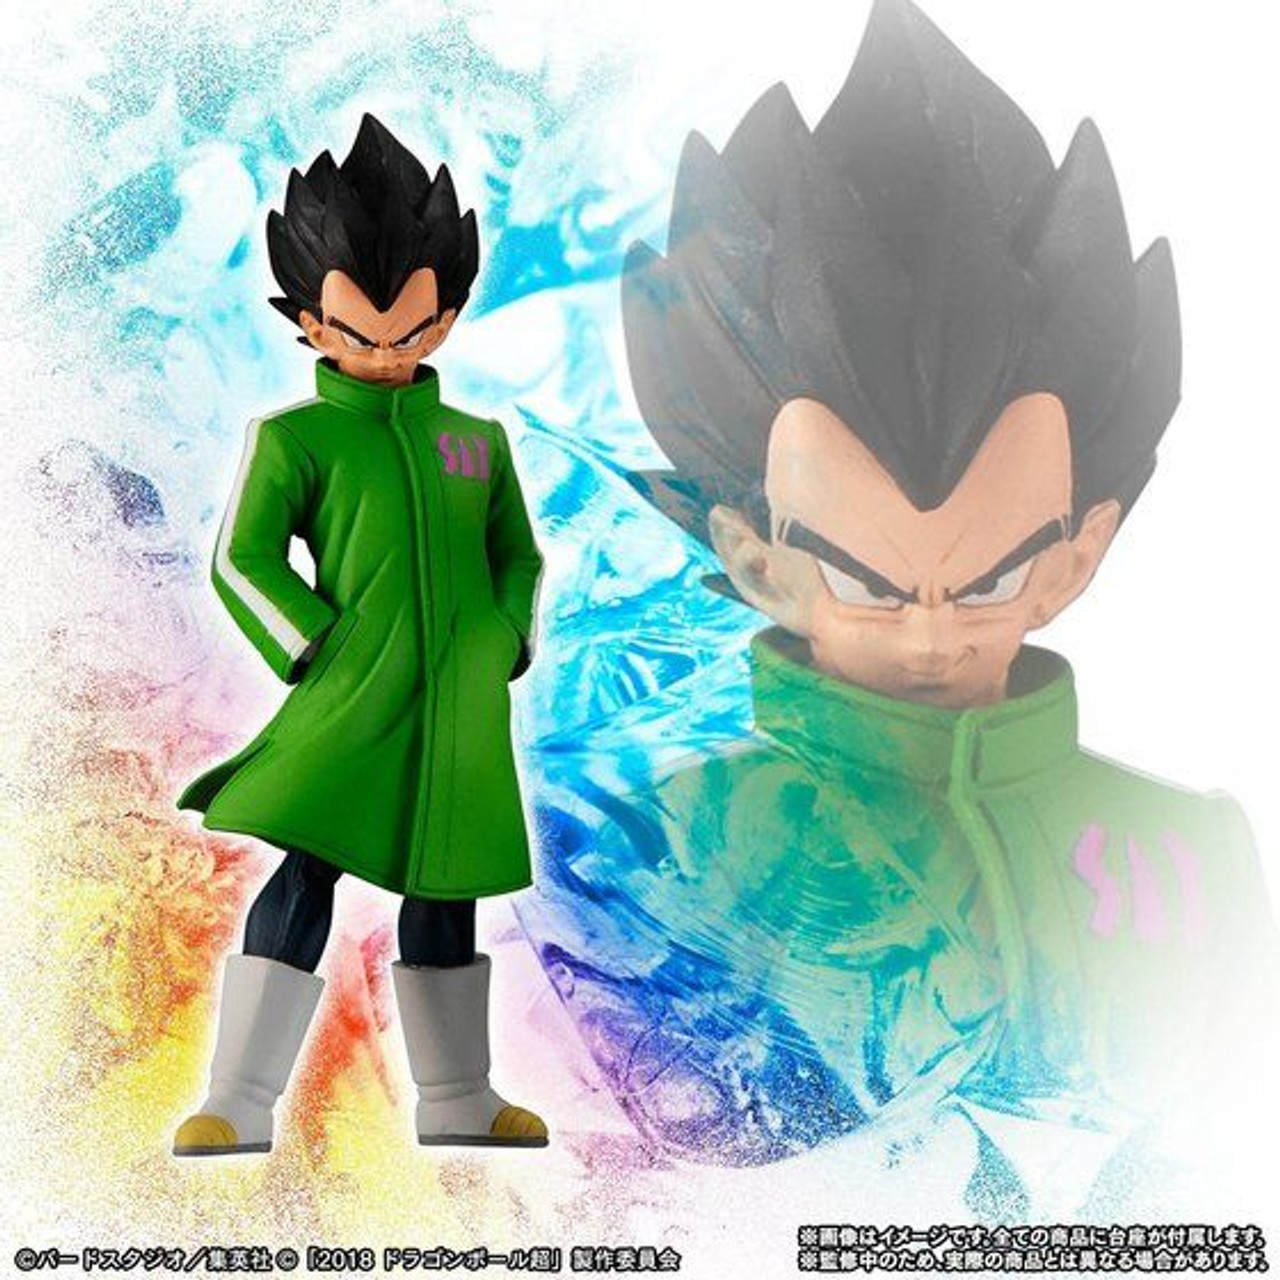 Dragon Ball Z Figures Set Saiyan Goku Son Blue Gokou Vegeta Broly